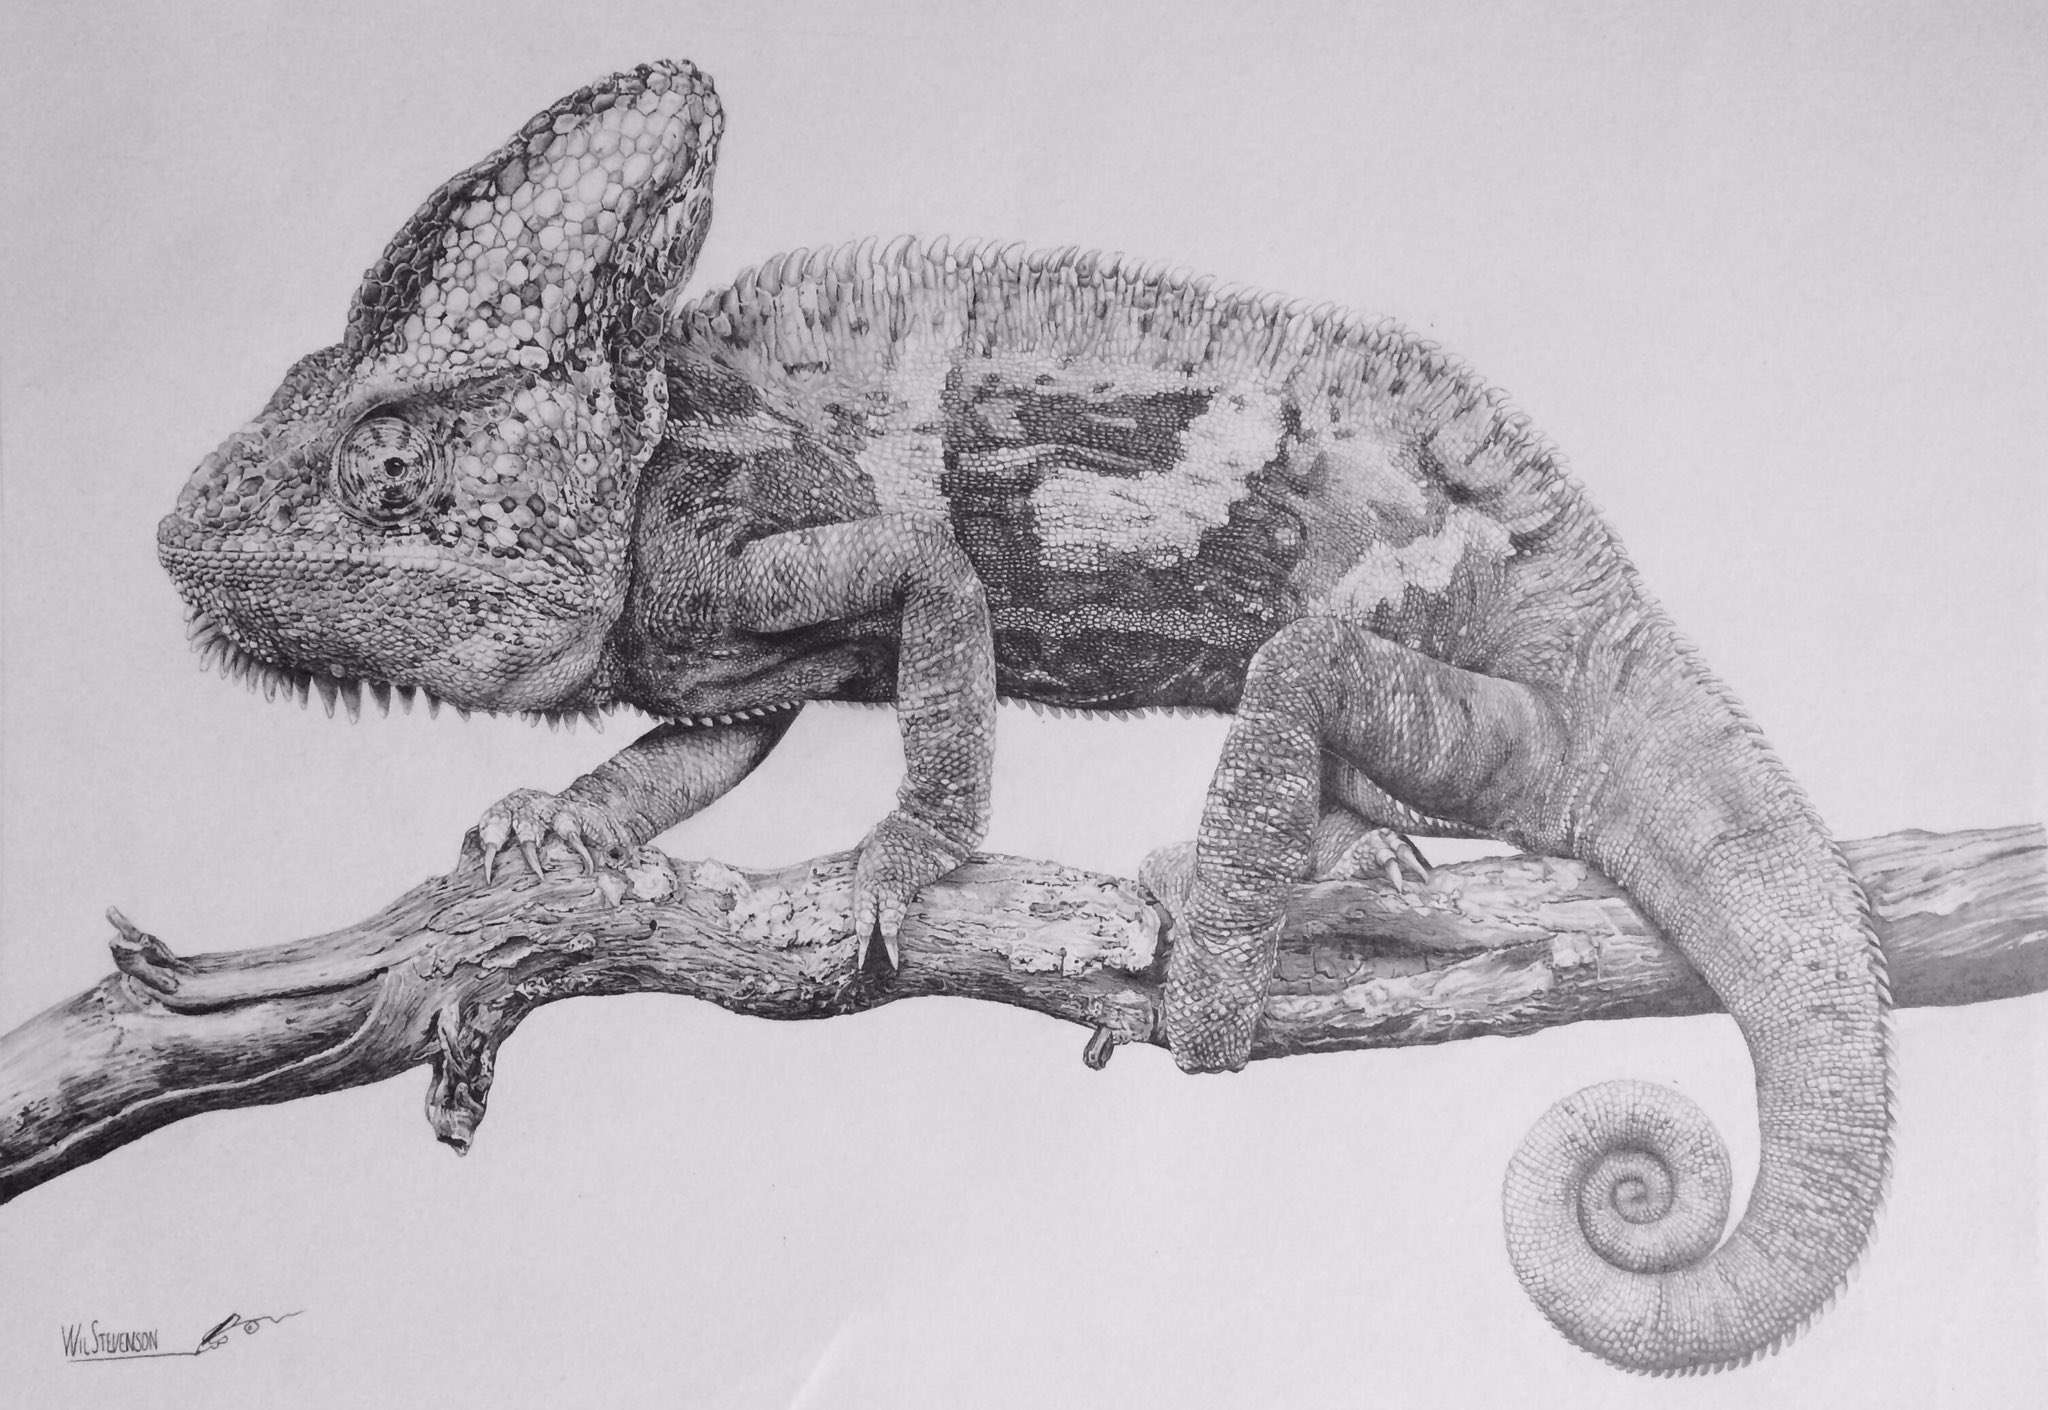 Wil Stevenson on Twitter: "Chameleon- pencil drawing . . . #chameleon #pencilart #drawing #lizard #nature #scales #wilstevensonart #wood / Twitter